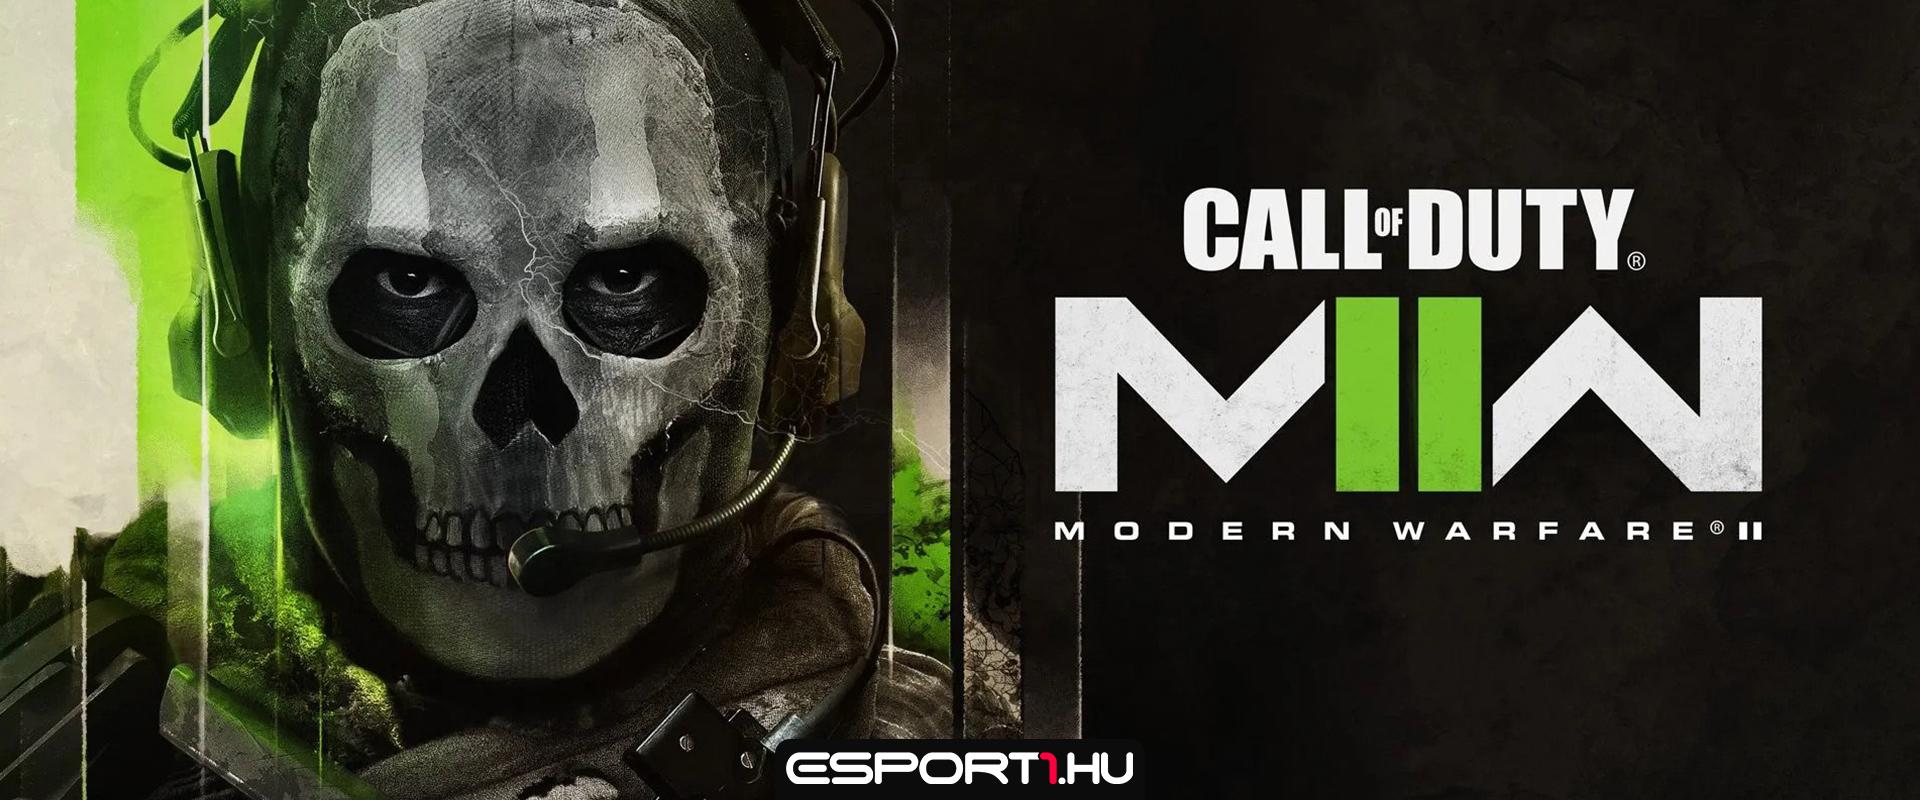 Pletykák szerint akár Steamen is megjelenhet az új CoD: Modern Warfare 2